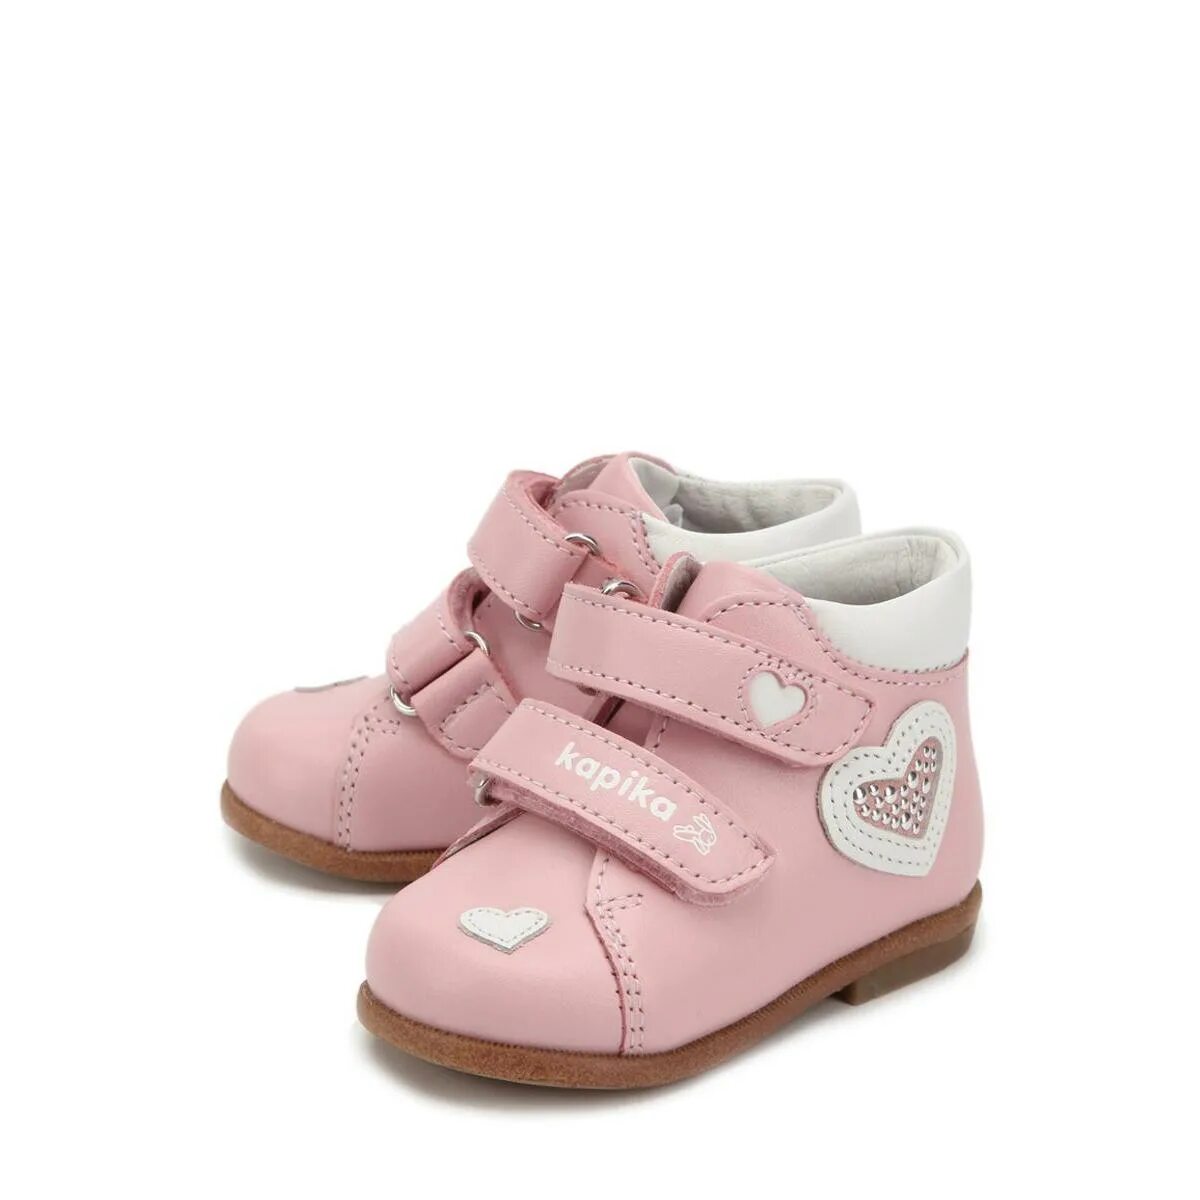 Кожаные ботинки для девочки Капика 2021. Детская обувь Nimco ботинки. EASYGO обувь детская ботинки. Ботиночки для малышей до года.